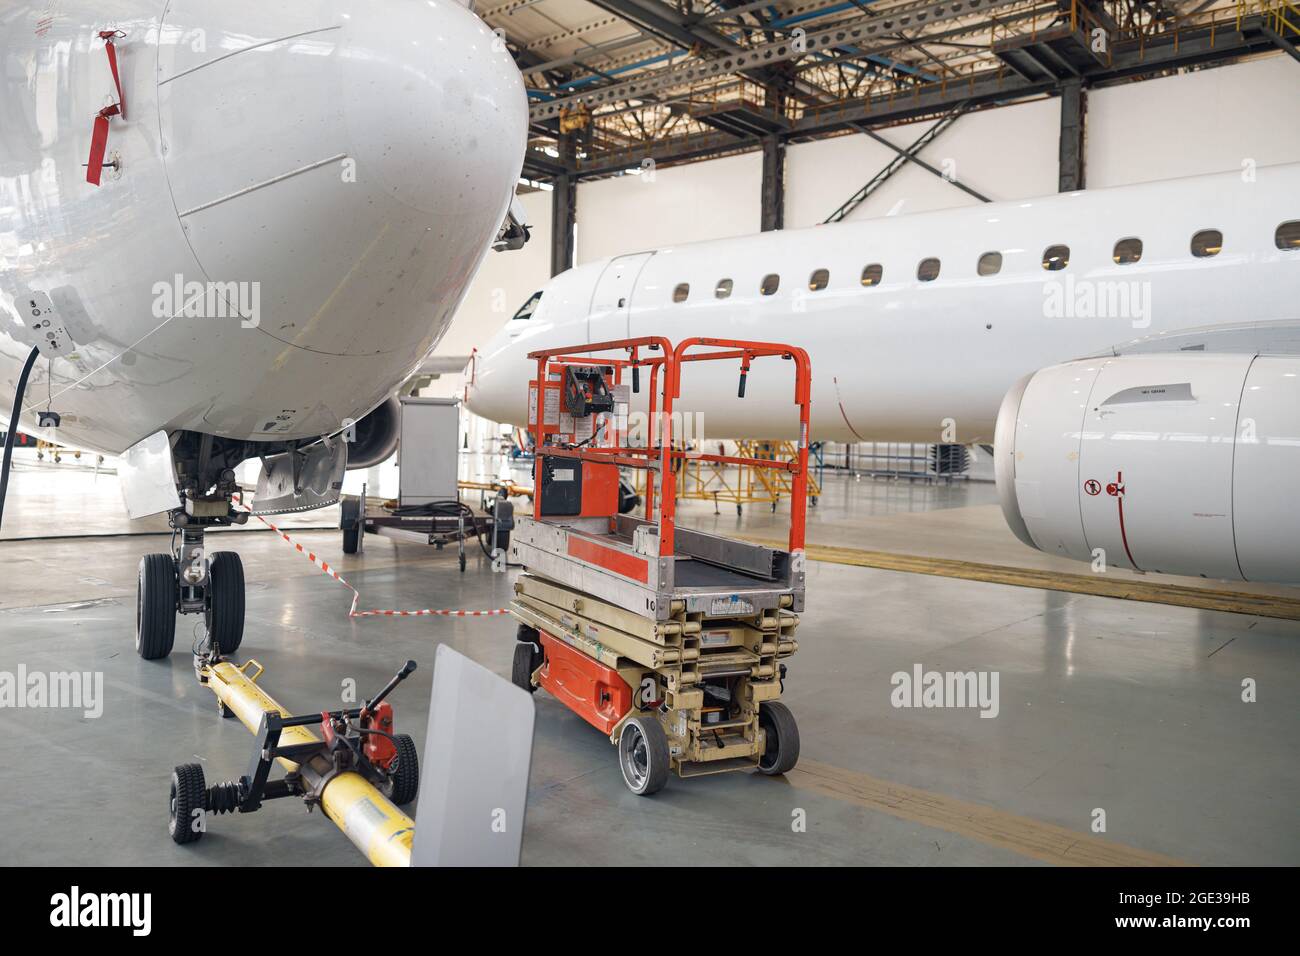 Avion de passagers en réparation d'entretien vérifier dans le hangar de l'aéroport à l'intérieur dans la journée Banque D'Images